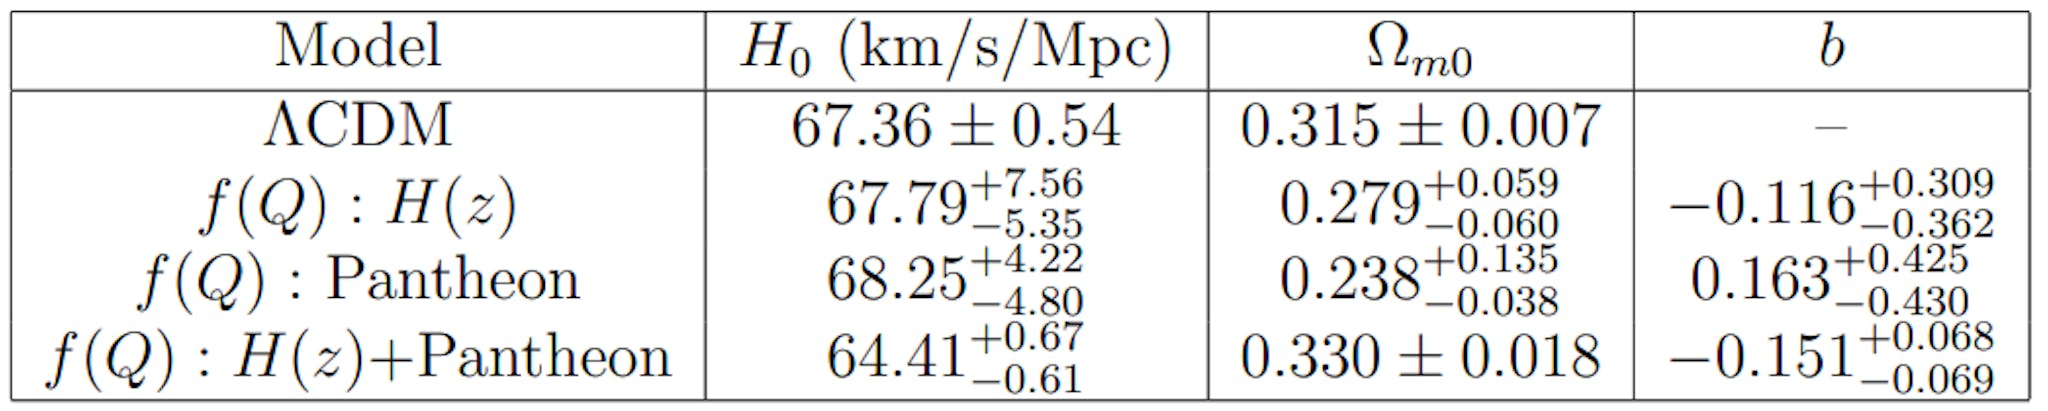 Tablo 2: MCMC analizinden elde edilen uygun parametreler için 1σ izin verilen aralıkların sonucu. ΛCDM modelinin değerleri Planck 2018'den alınmıştır [56].